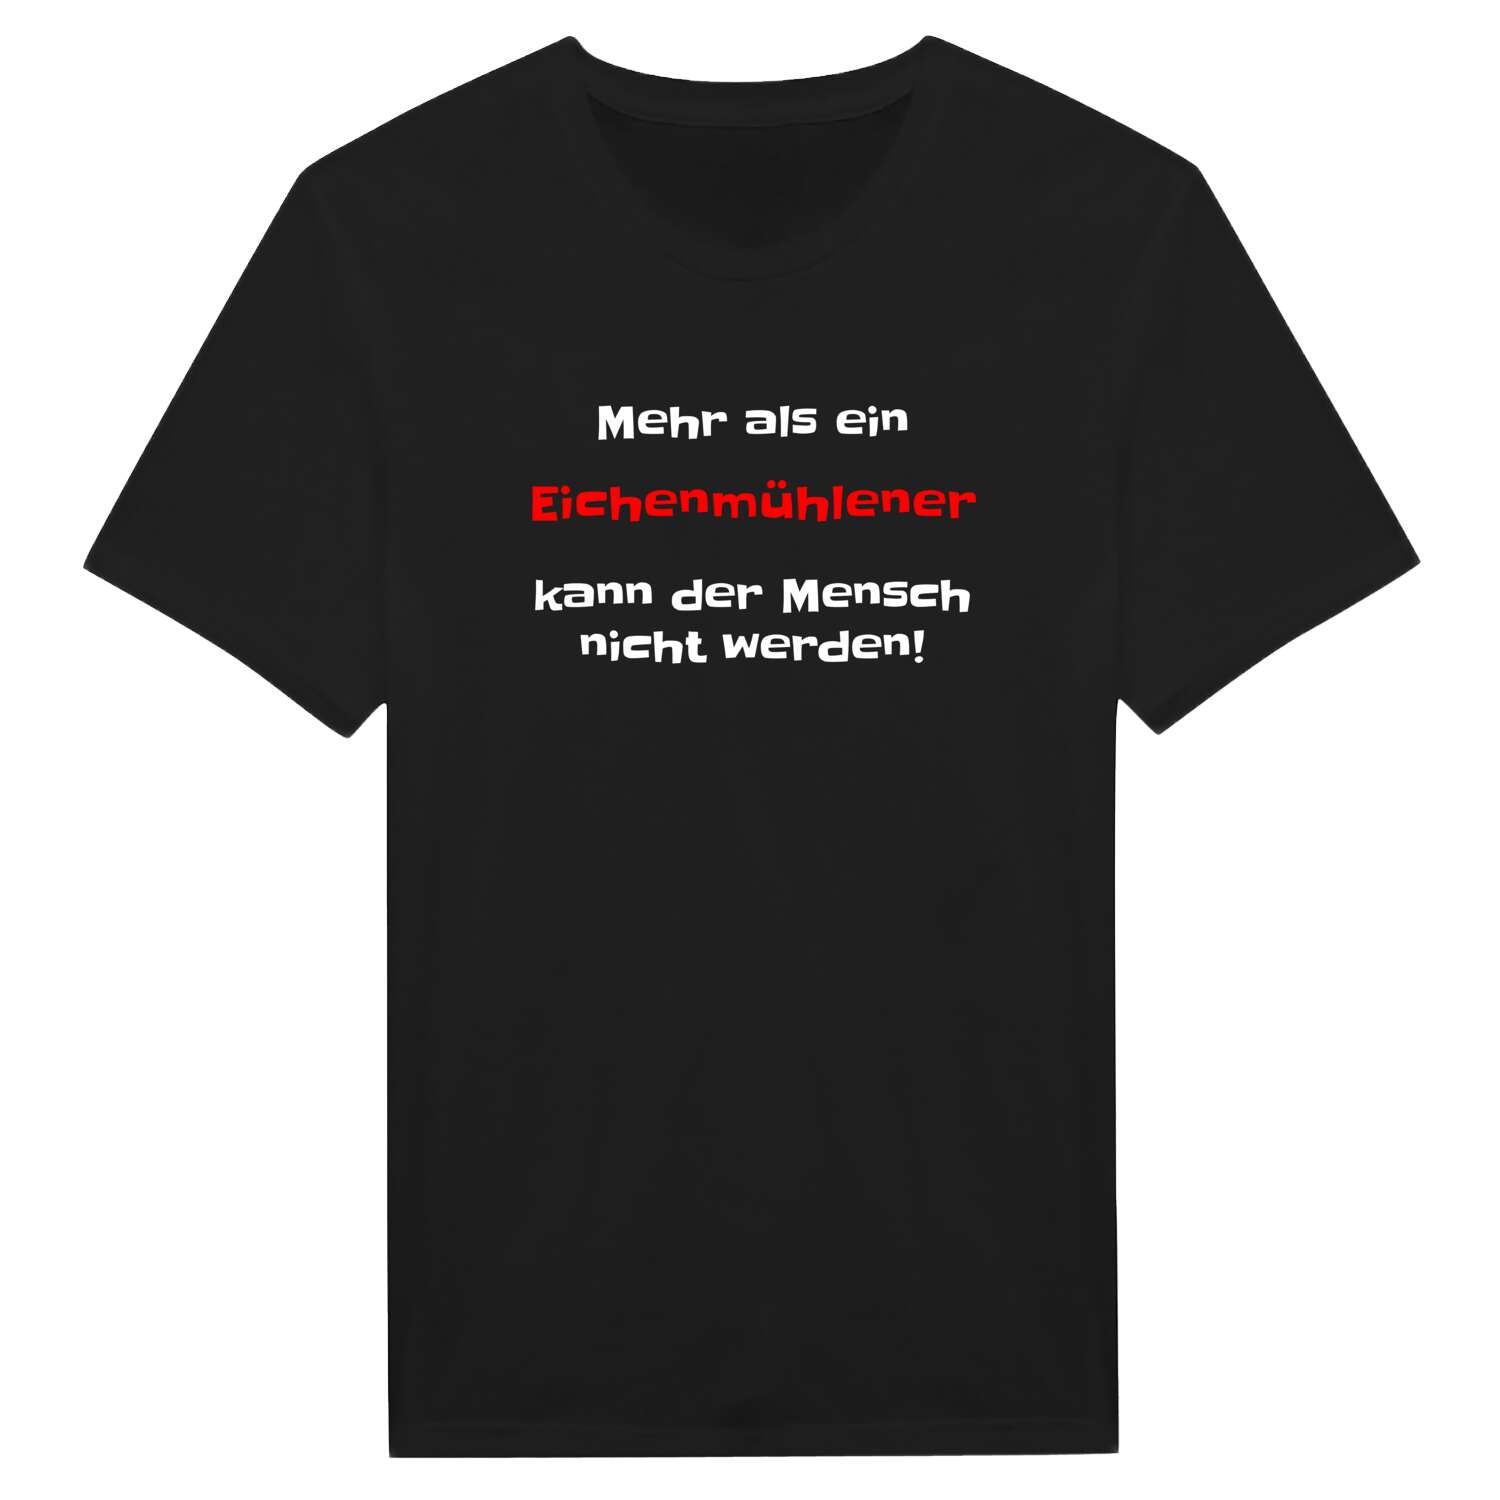 Eichenmühle T-Shirt »Mehr als ein«